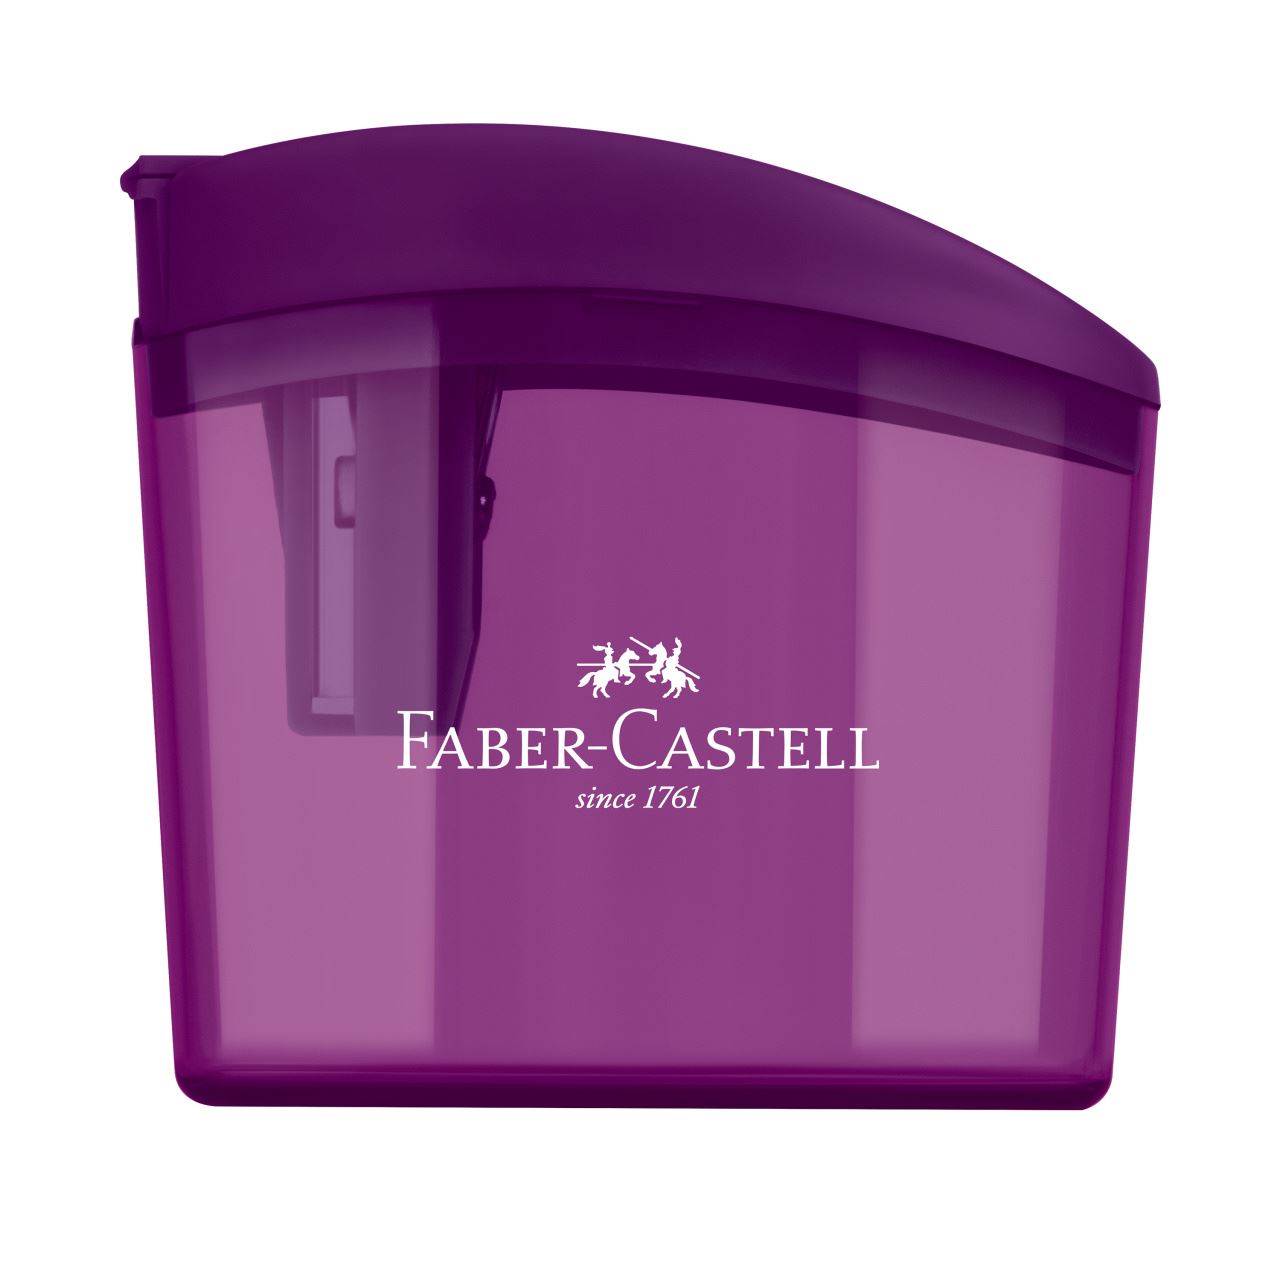 Faber-Castell - Apontador c/ Deposito Clickbox